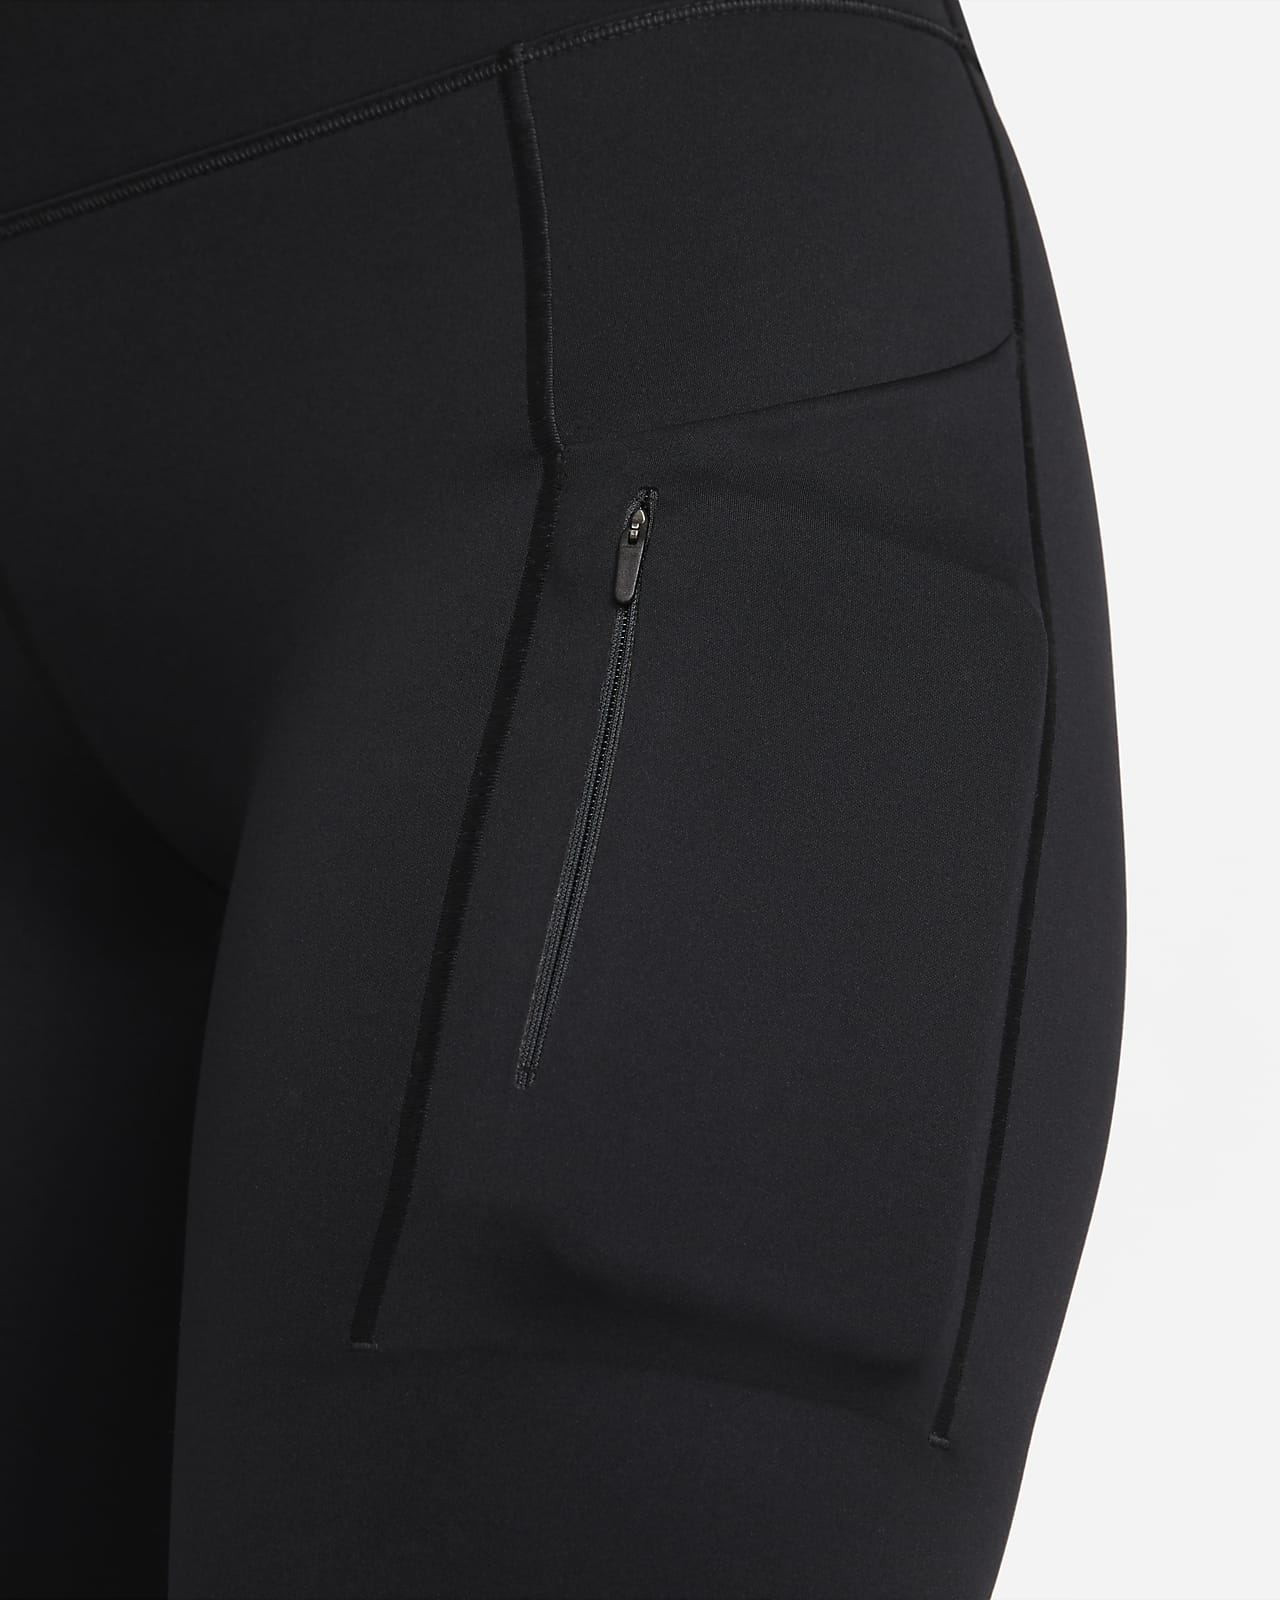 Nike Pro Women's Capri Compression Leggings Size Small Dri-Fit Black Green